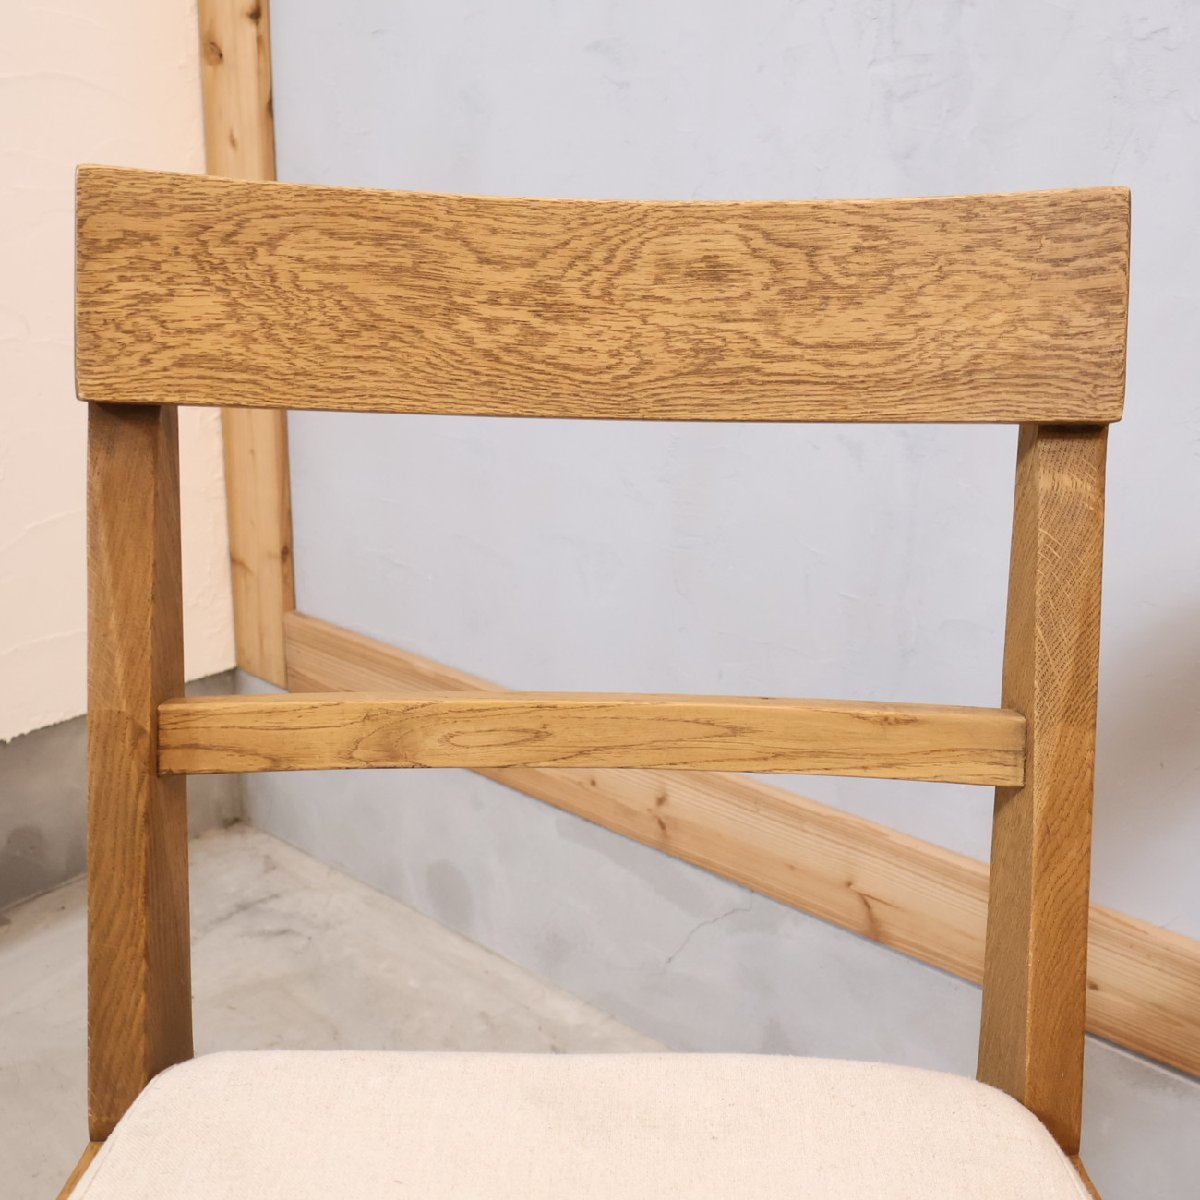 unicoウニコ ADDAY アディ オーク材 ダイニングチェア サイドチェア ビンテージテイスト ナチュラル シンプル カフェ風 木製椅子 EB435